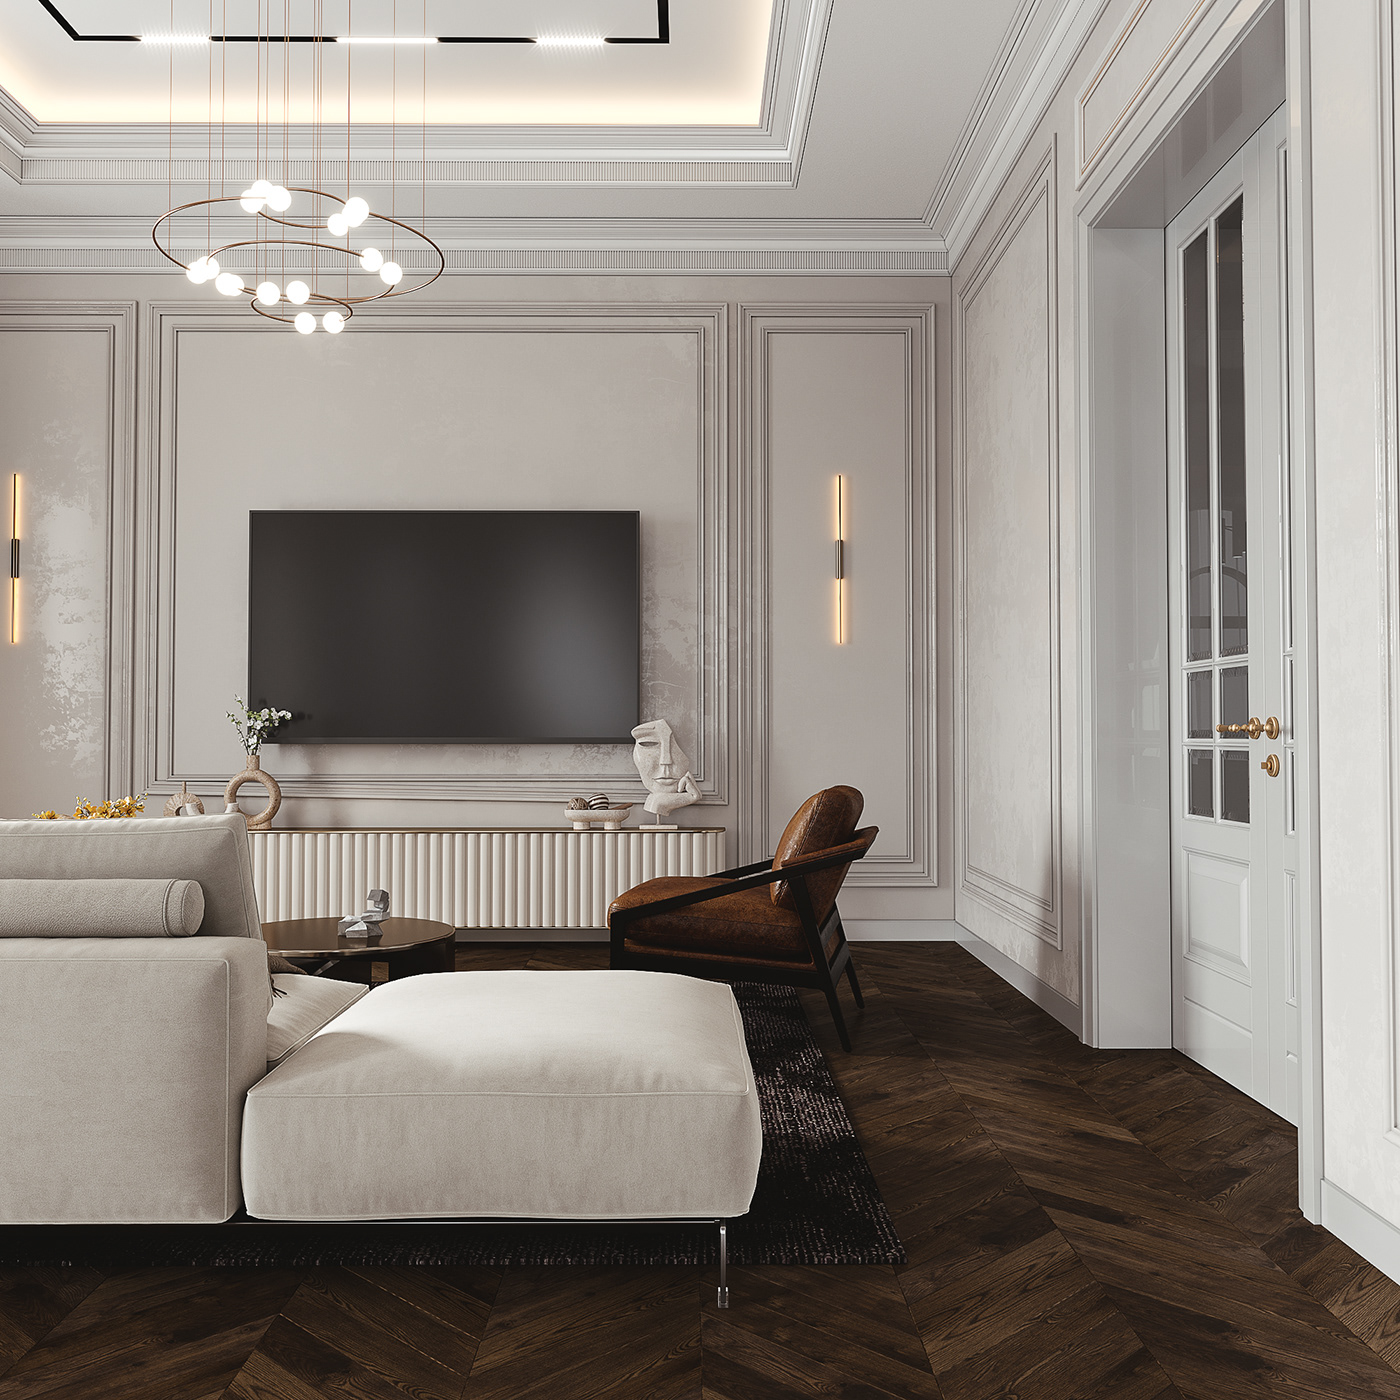 Design neoclassical Interior interior design  living room living room design neoclassic гостиная   гостинная дизайн